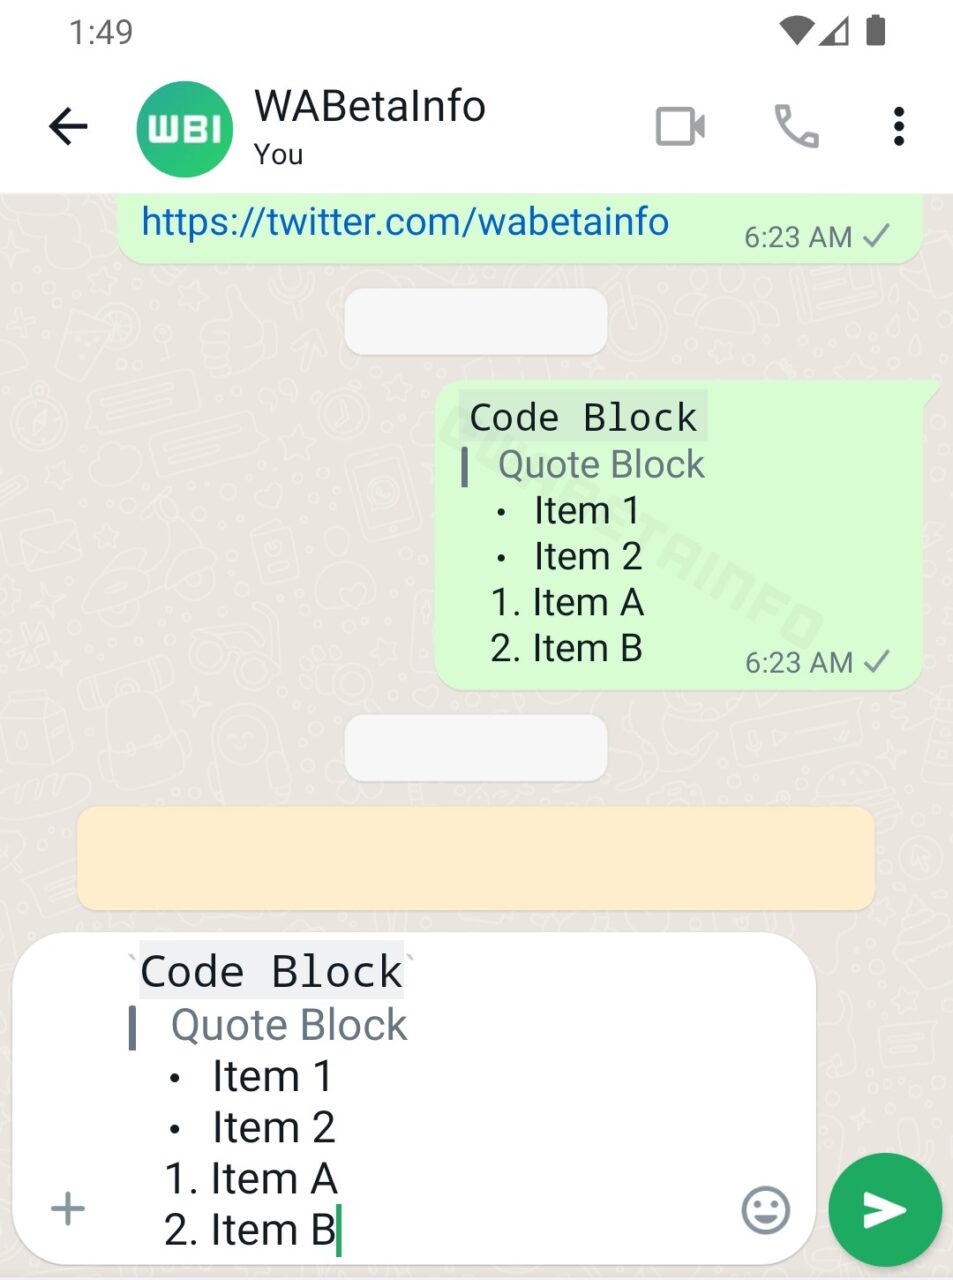 Zrzut ekranu z aplikacji komunikatora WhatsApp, pokazujący rozmowę z użytkownikiem o nazwie "WABetaInfo". W oknie czatu widoczne są dwie wiadomości z różnymi blokami kodu i formatowaniem listy.